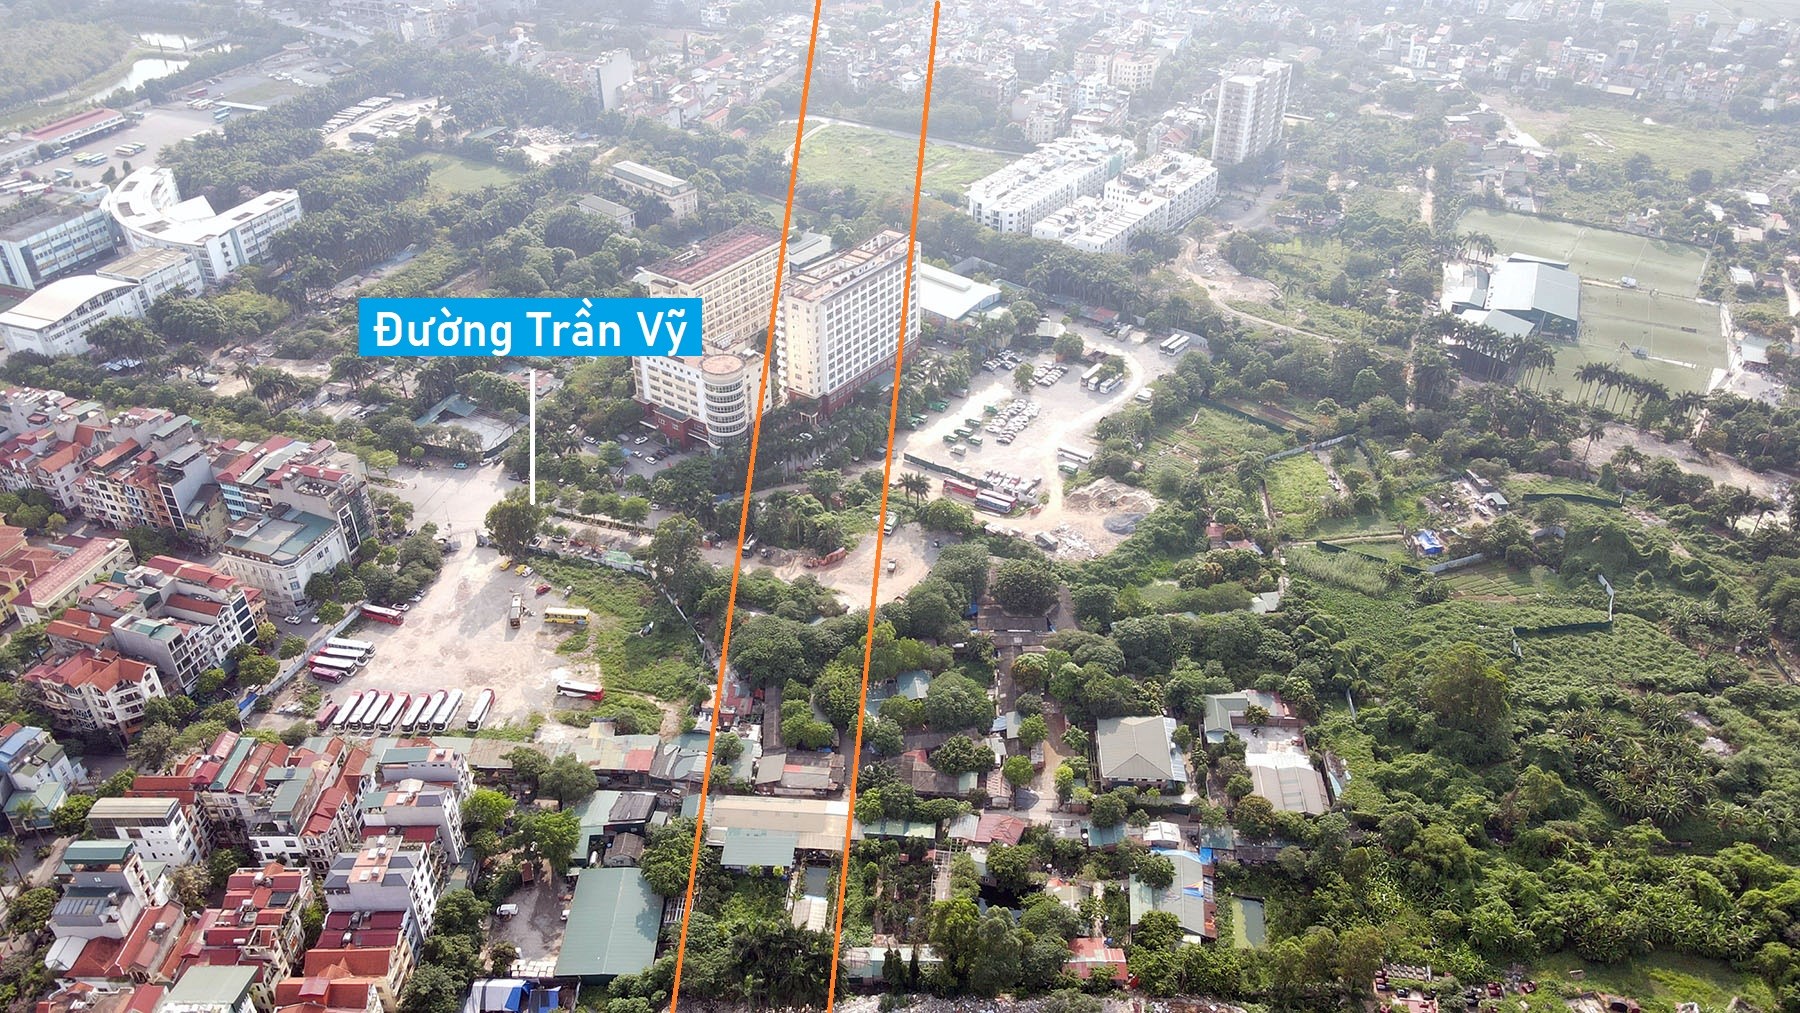 Toàn cảnh vị trí sẽ xây hầm chui tại nút giao đường Hoàng Quốc Việt - Phạm Văn Đồng